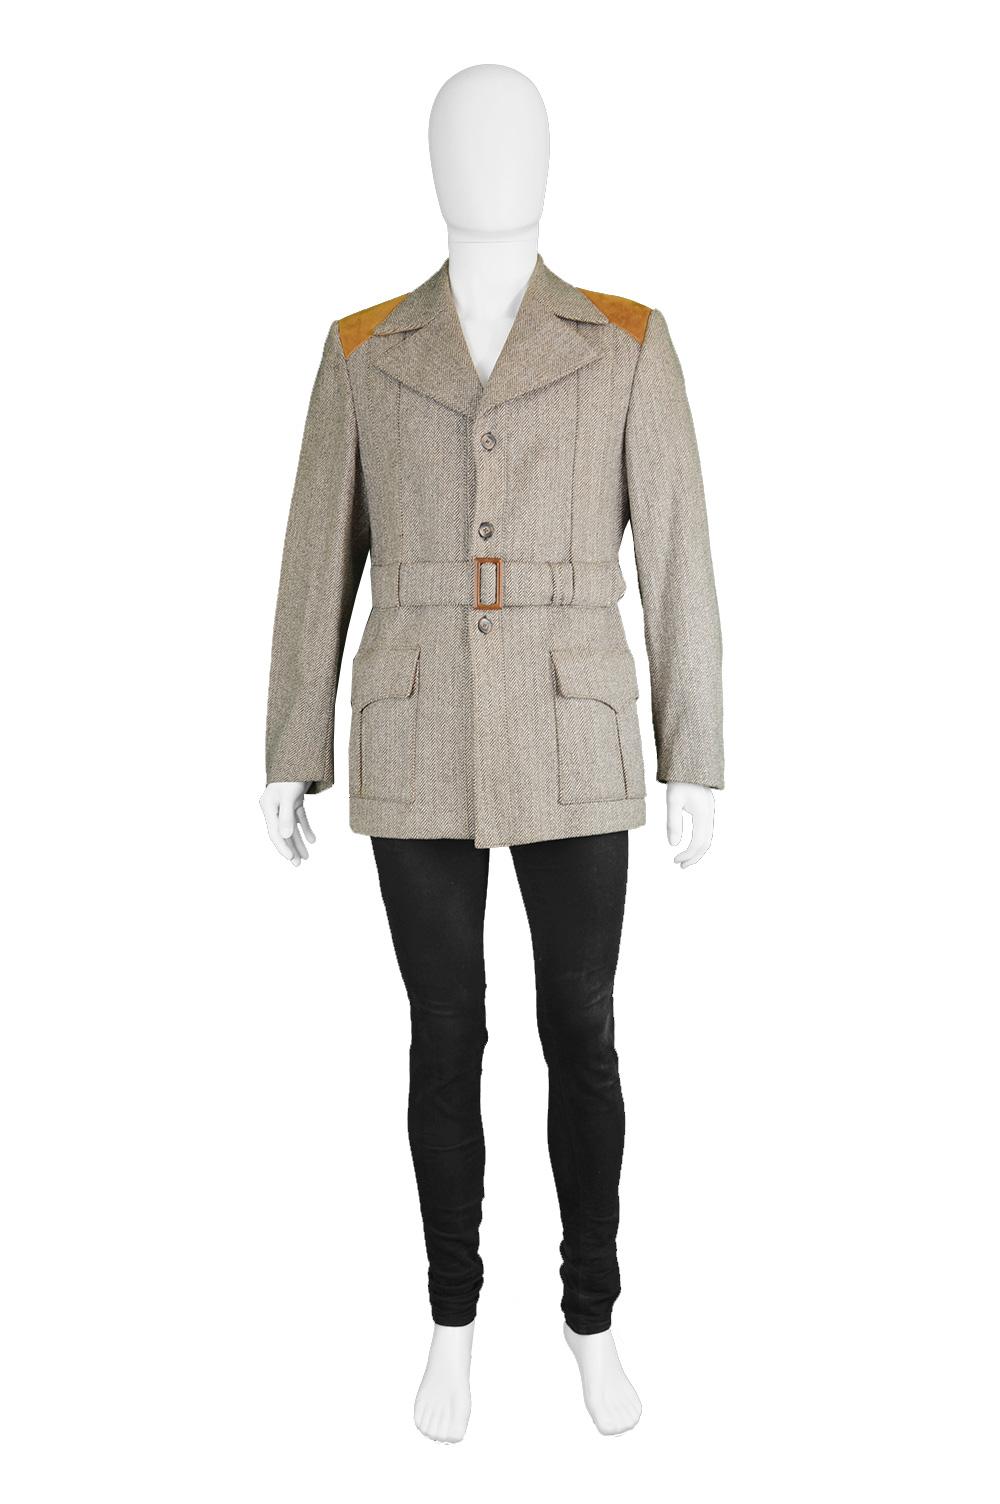 Glenhusky Pure Virgin Wool Herringbone Tweed & Suede Mens Vintage Norfolk Jacket

Size: Marked to fit a GB 38